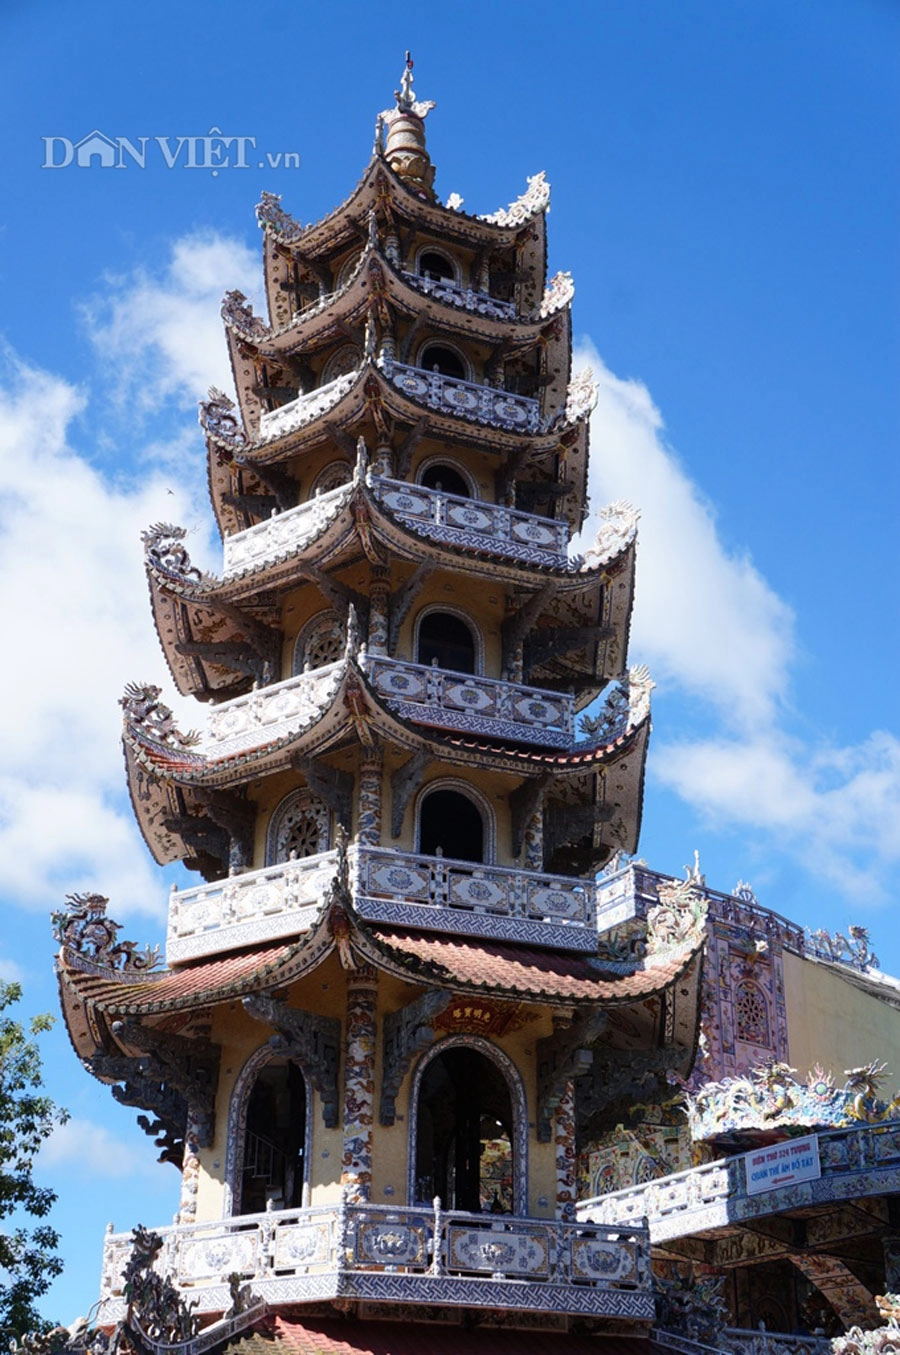 Ngôi chùa có kiến trúc lạ và độc đáo bậc nhất việt nam